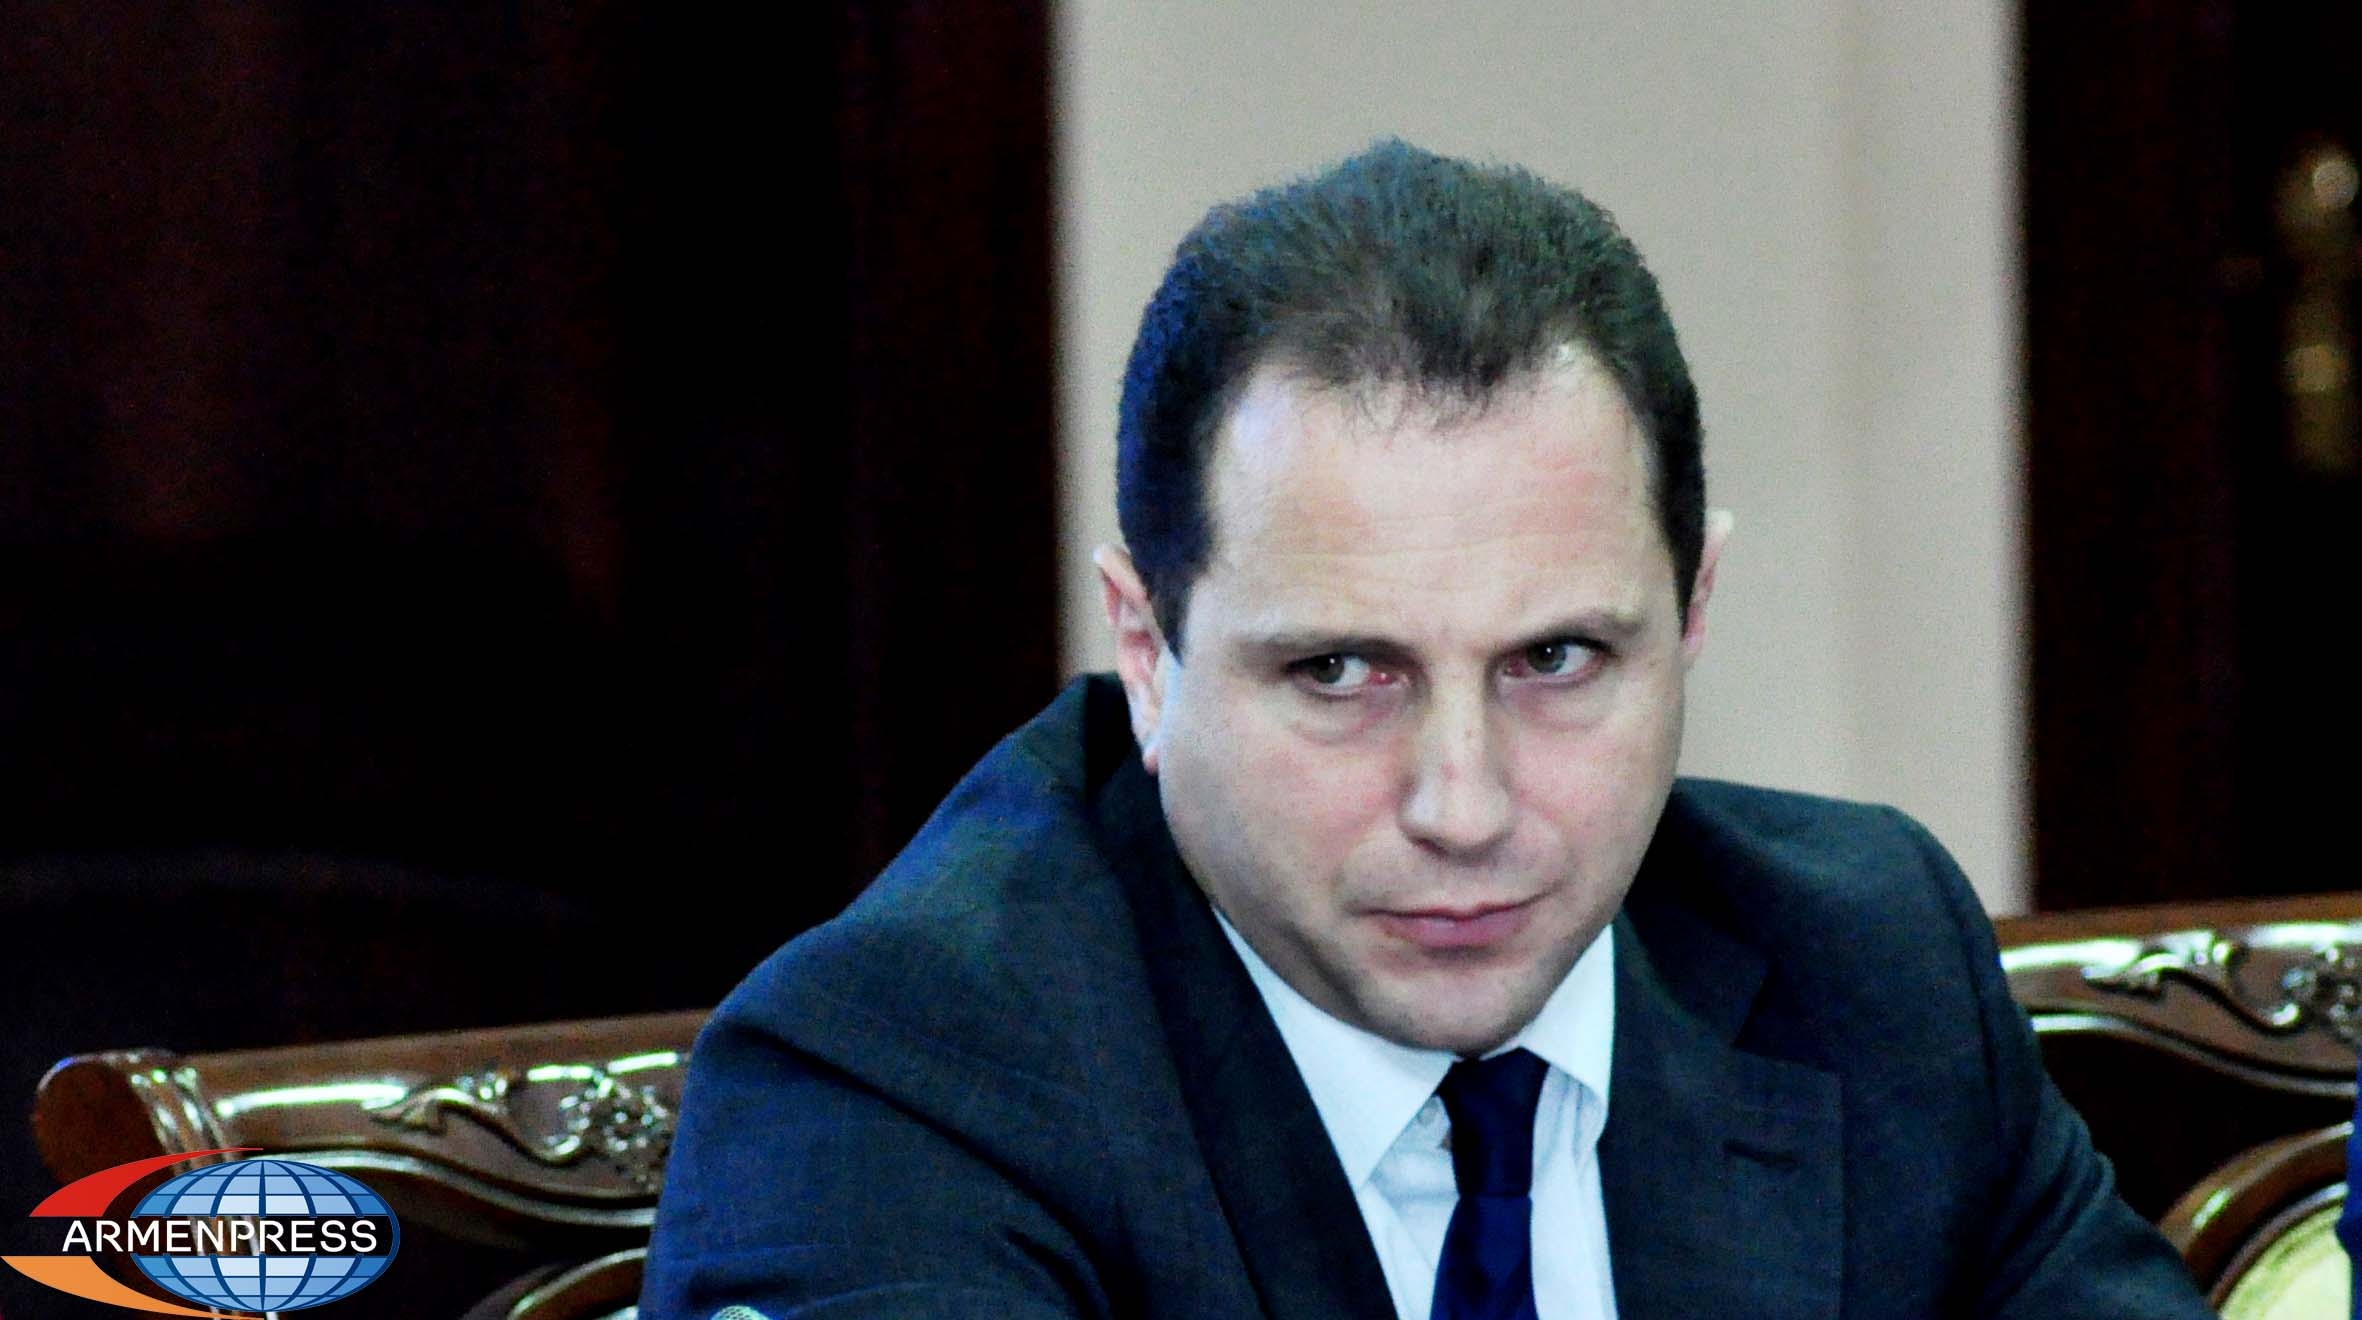 Армянская сторона готова представить «вещественные доказательства», обнаруженные на 
месте диверсионной группы, сопредседателям МГ ОБСЕ: МО РА